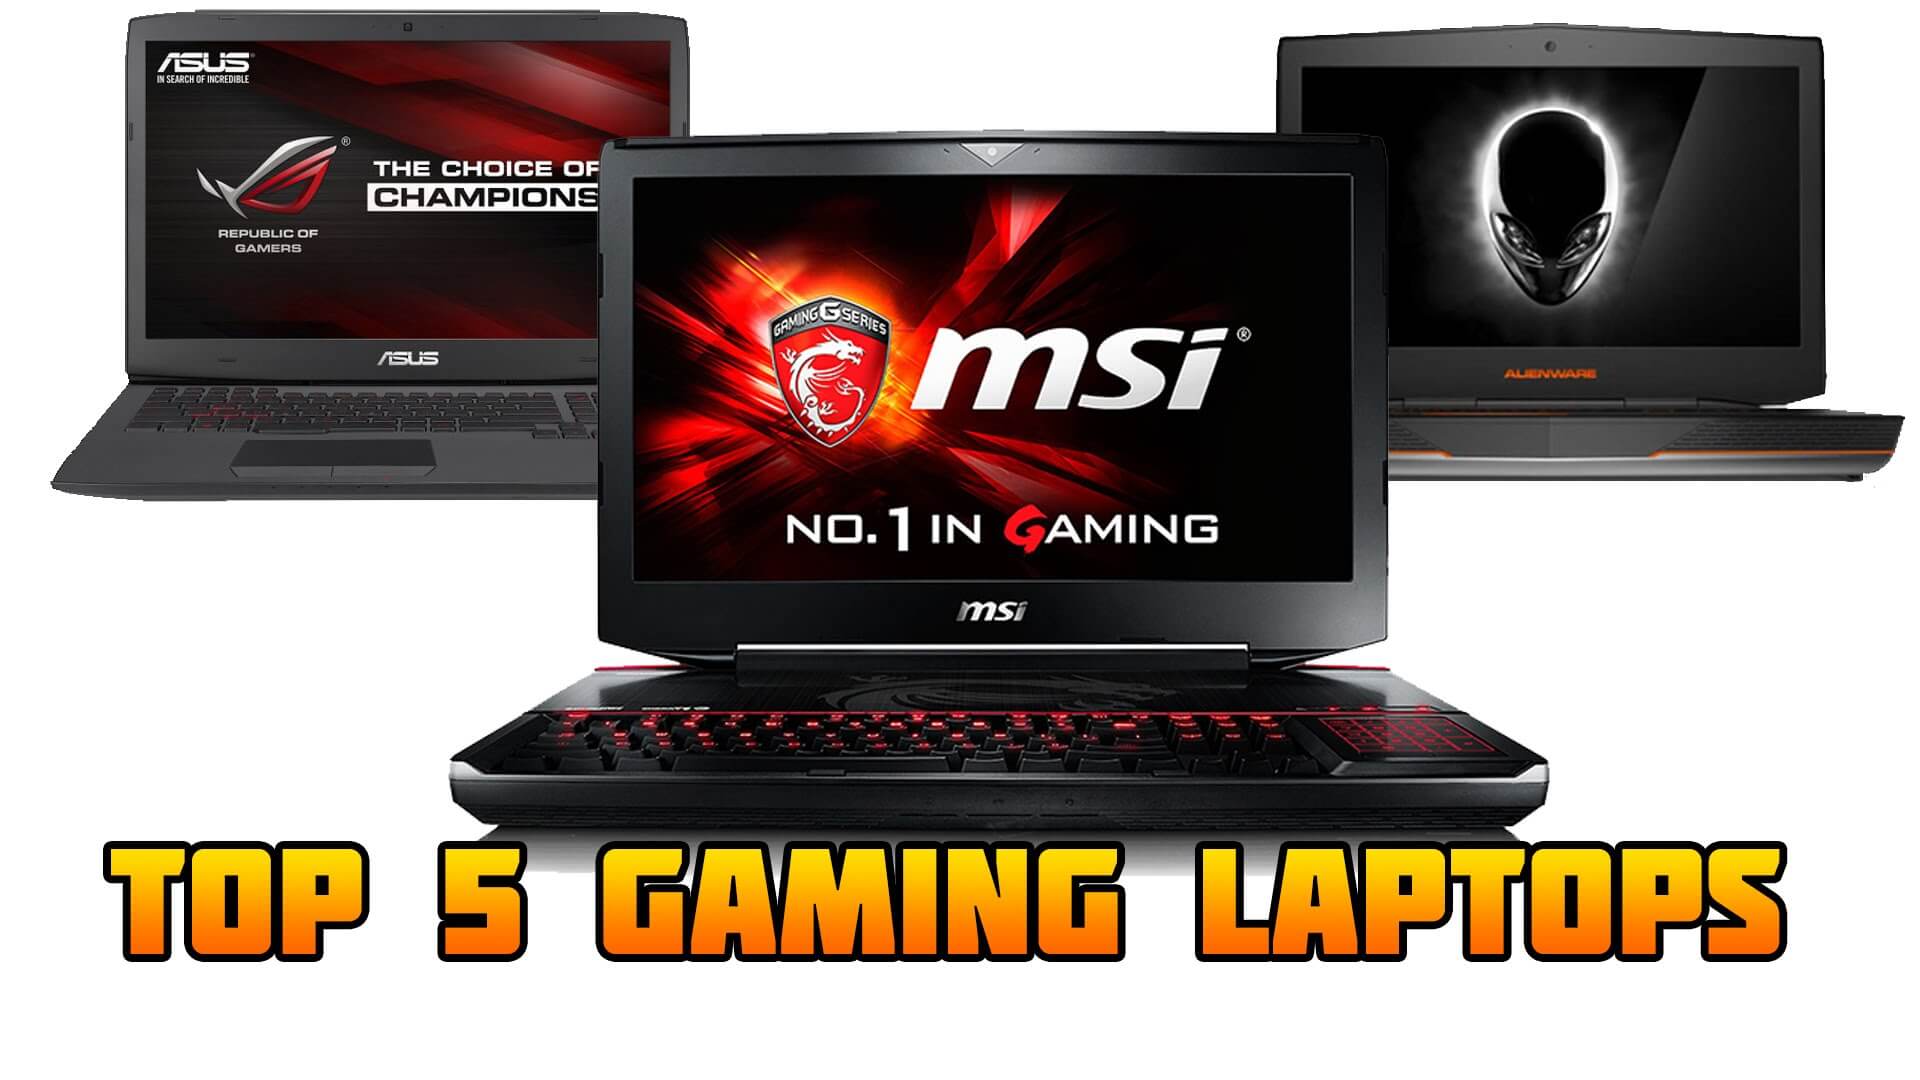 Top 5 Gaming Laptops